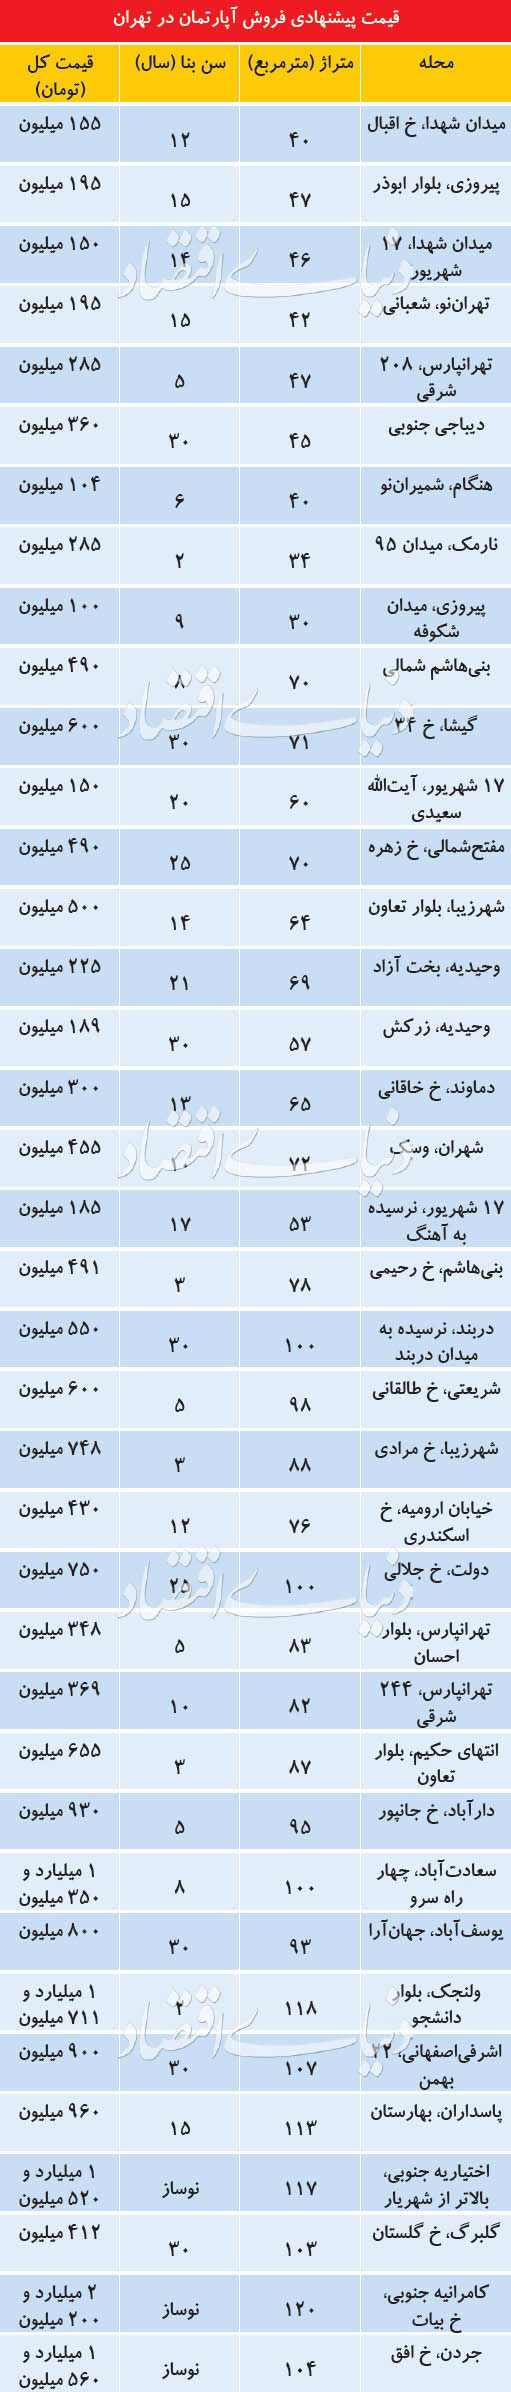 چرخی در قیمت مسکن در نقاط مختلف تهران